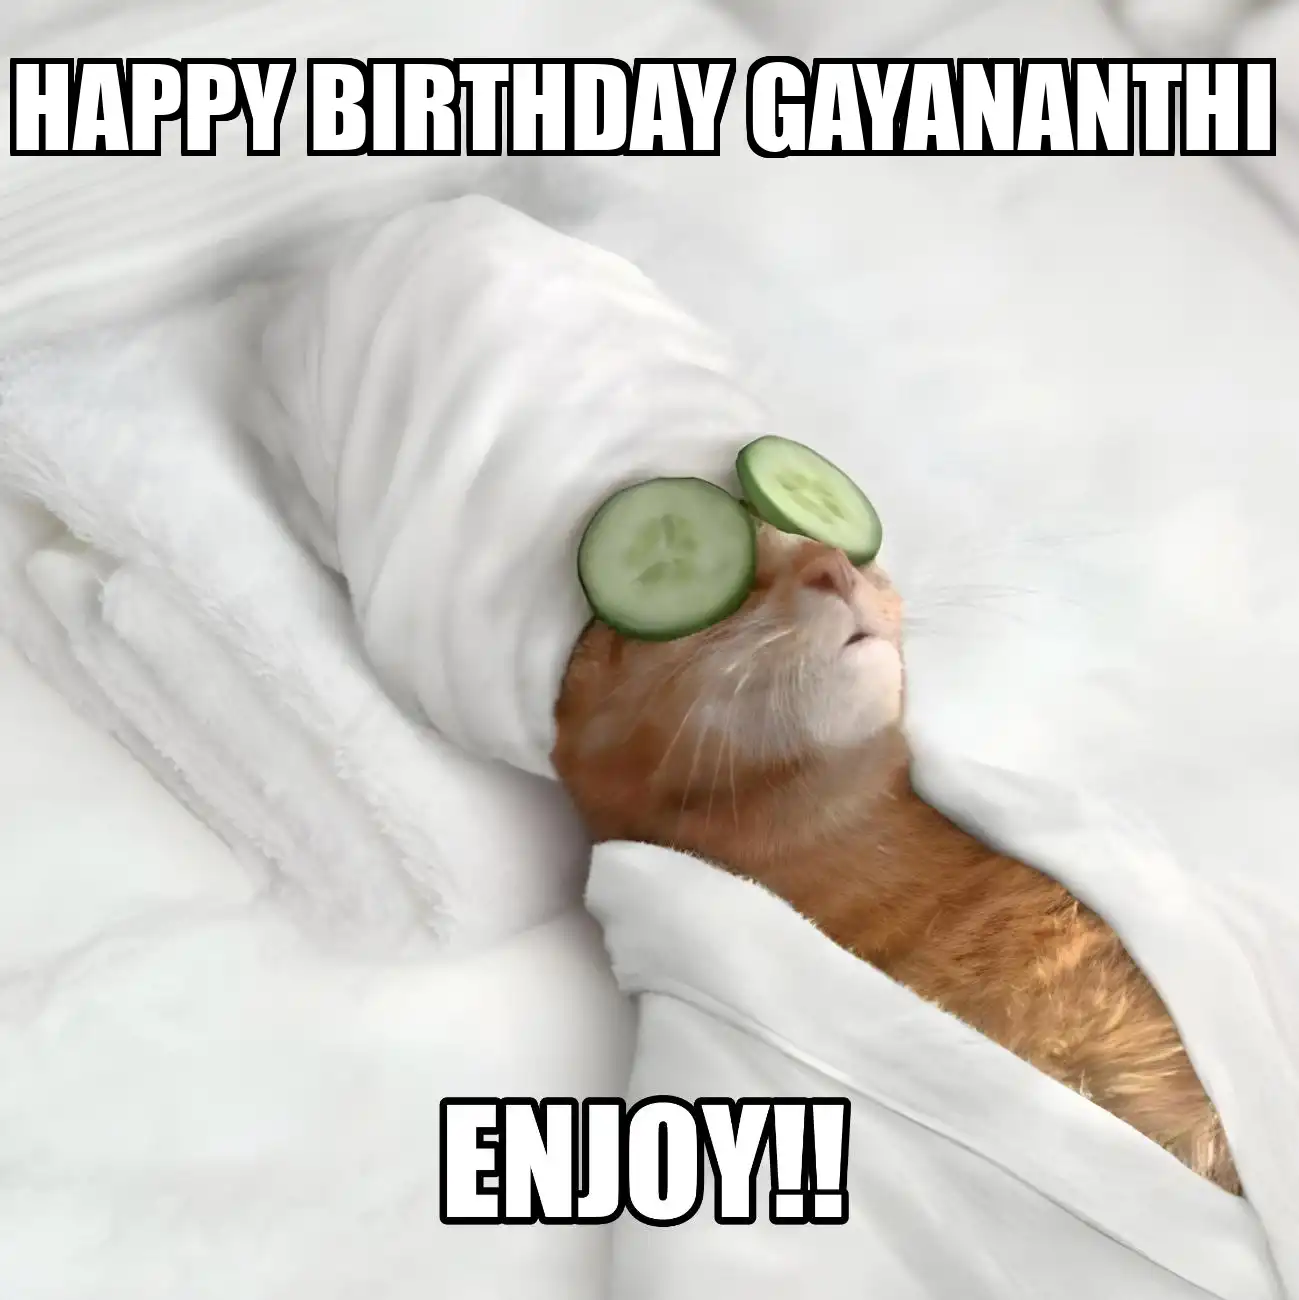 Happy Birthday Gayananthi Enjoy Cat Meme